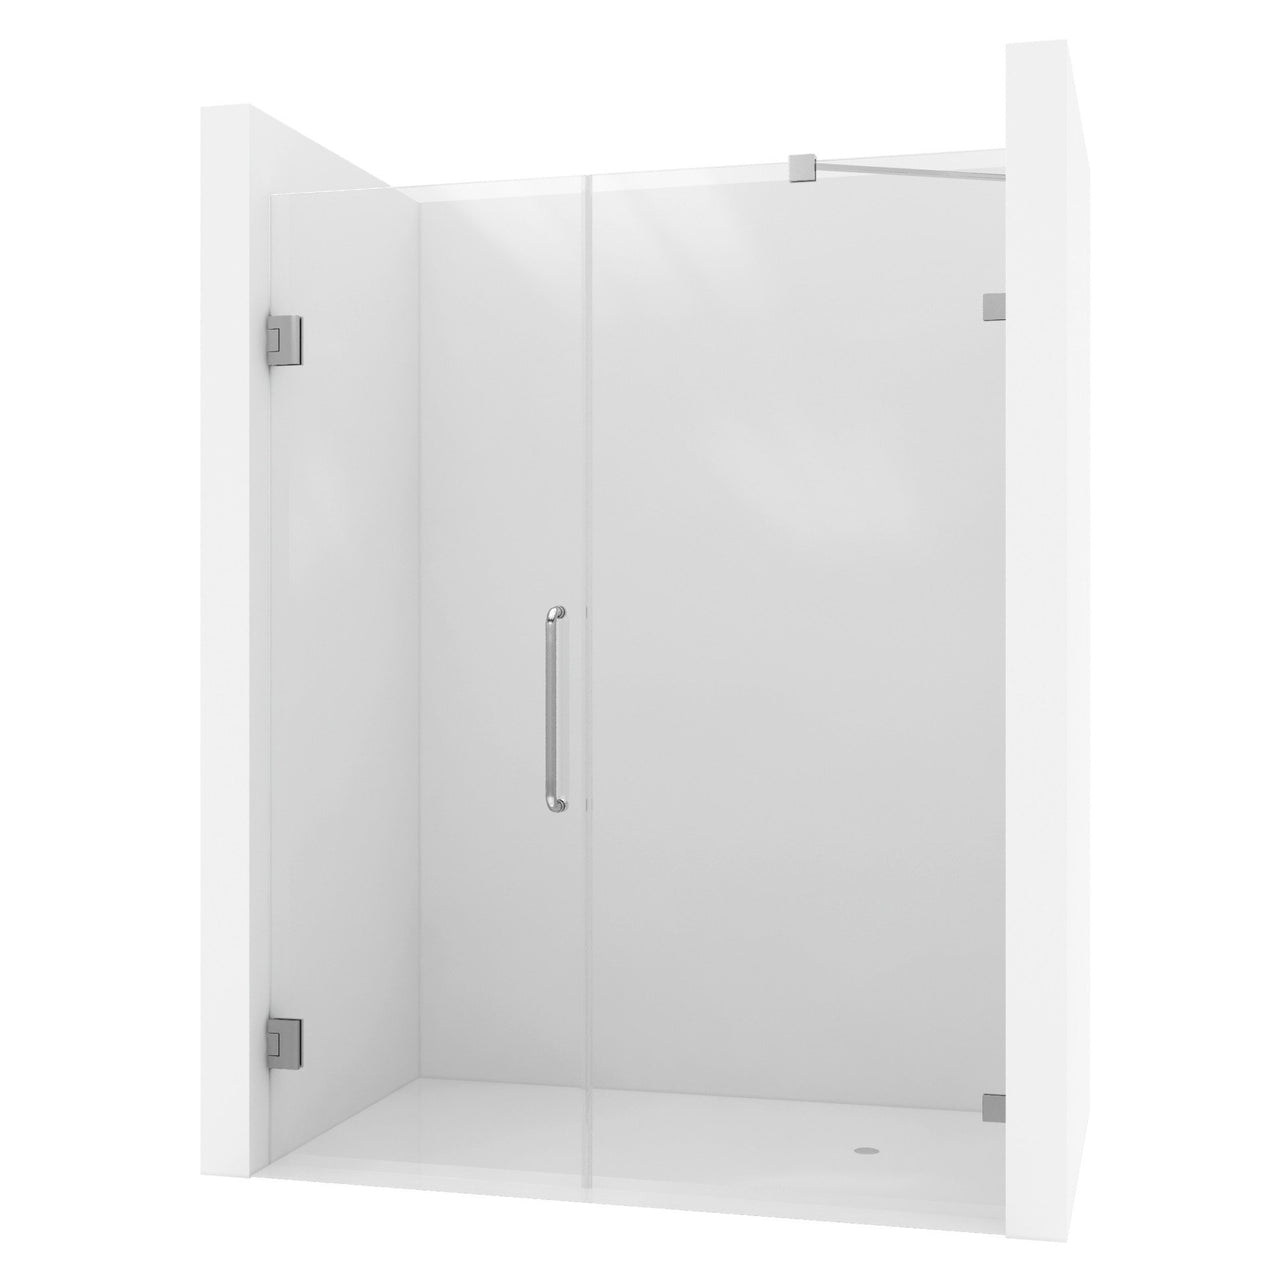 ANZZI Consort Series SD-AZ07-01CH Shower Doors Shower Doors ANZZI 